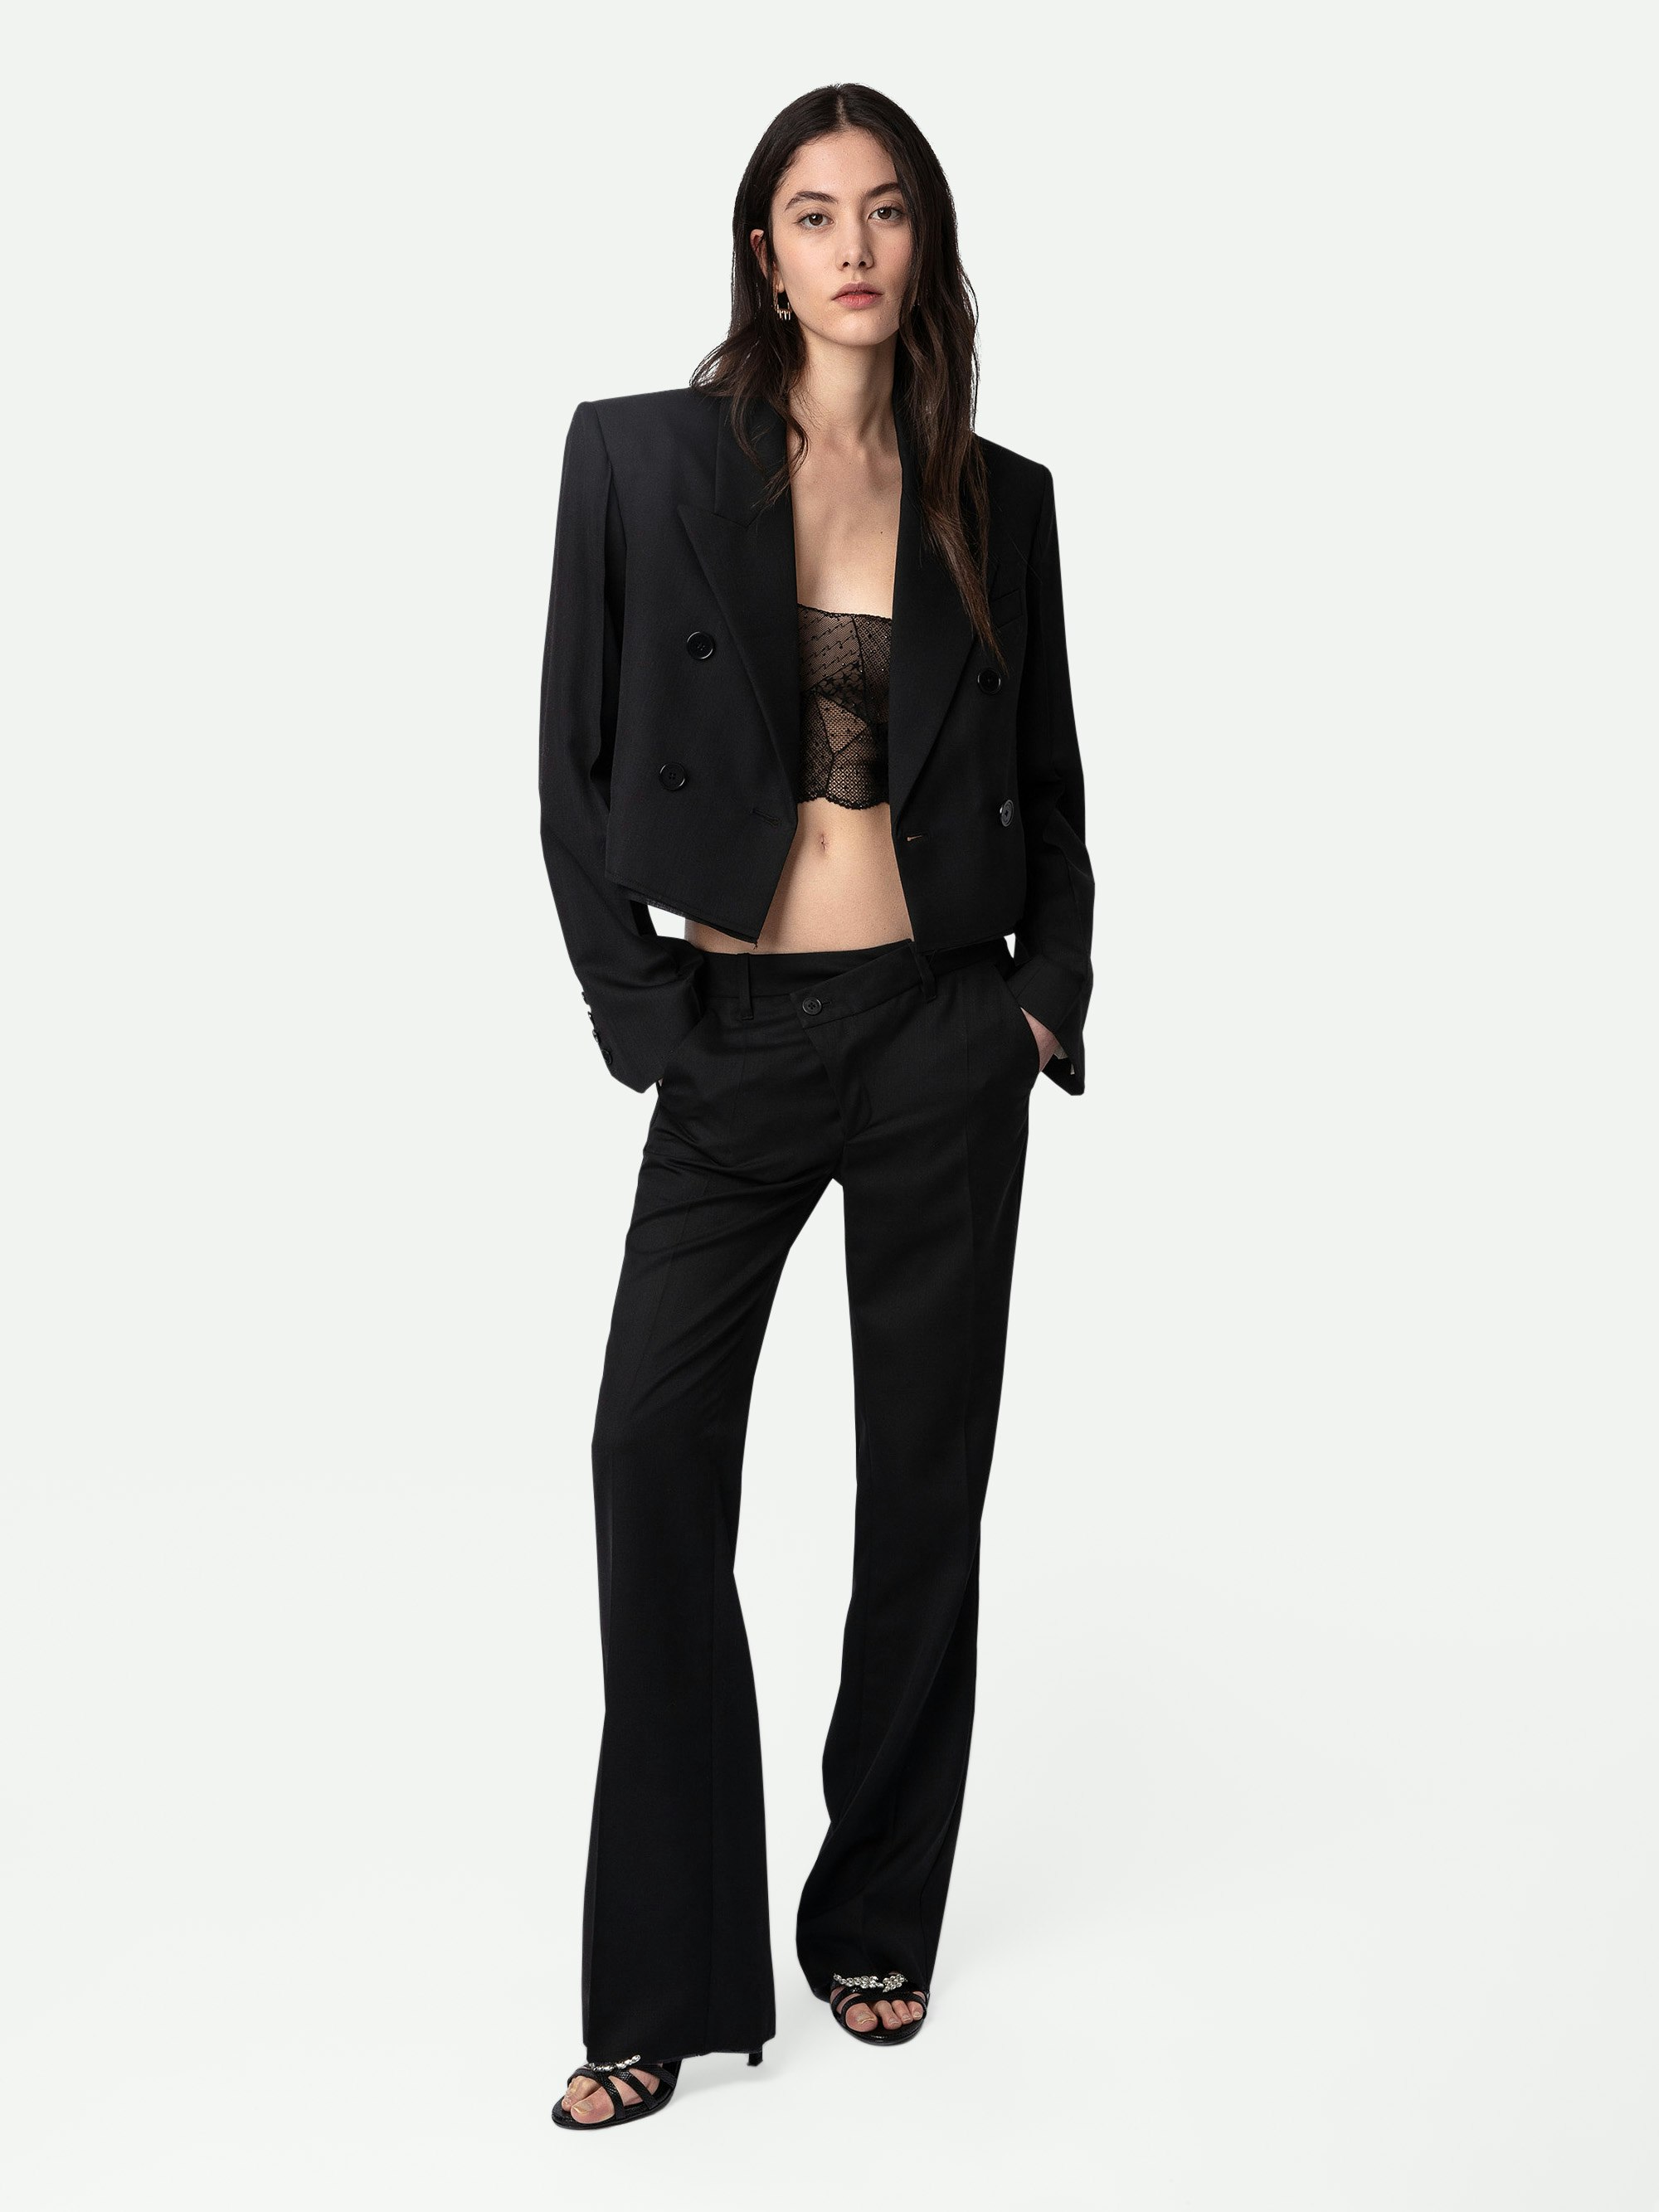 Hose Poxy - Weite Anzughose aus leichter Wolle in Schwarz mit asymmetrischem Verschluss und unversäuberten Details.